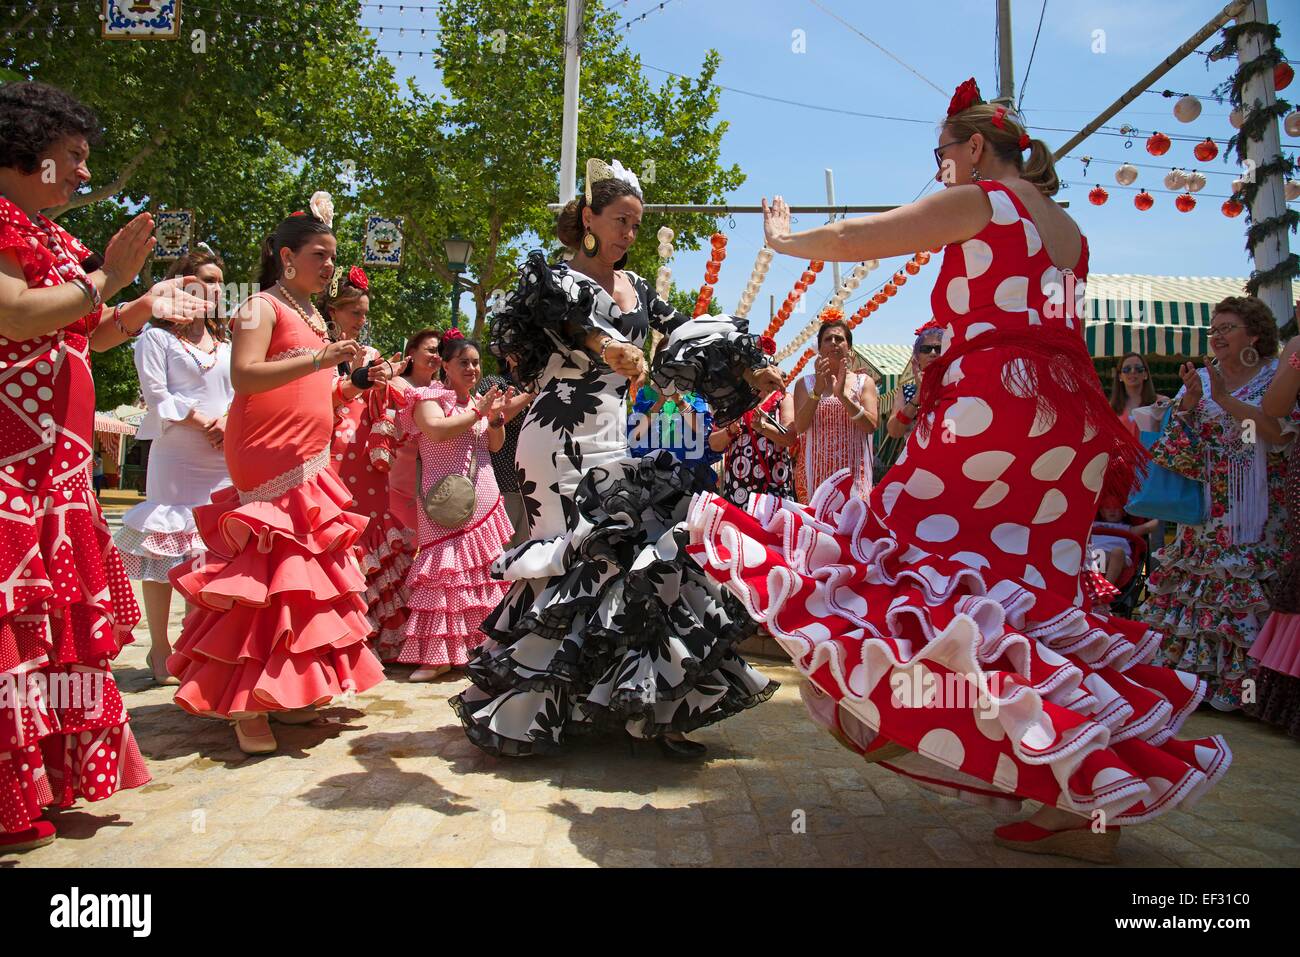 FERIA DE ABRIL 2021 - Clases de Flamenco y Danza Española en Tarragona